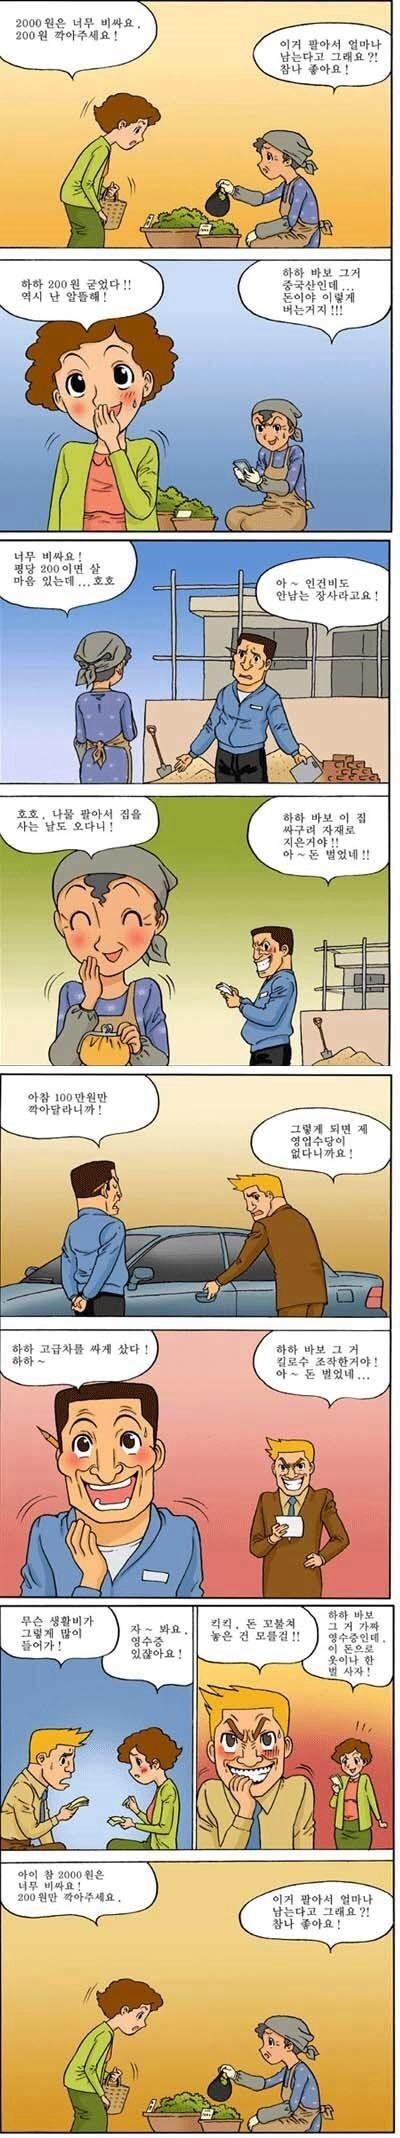 한국인의 정